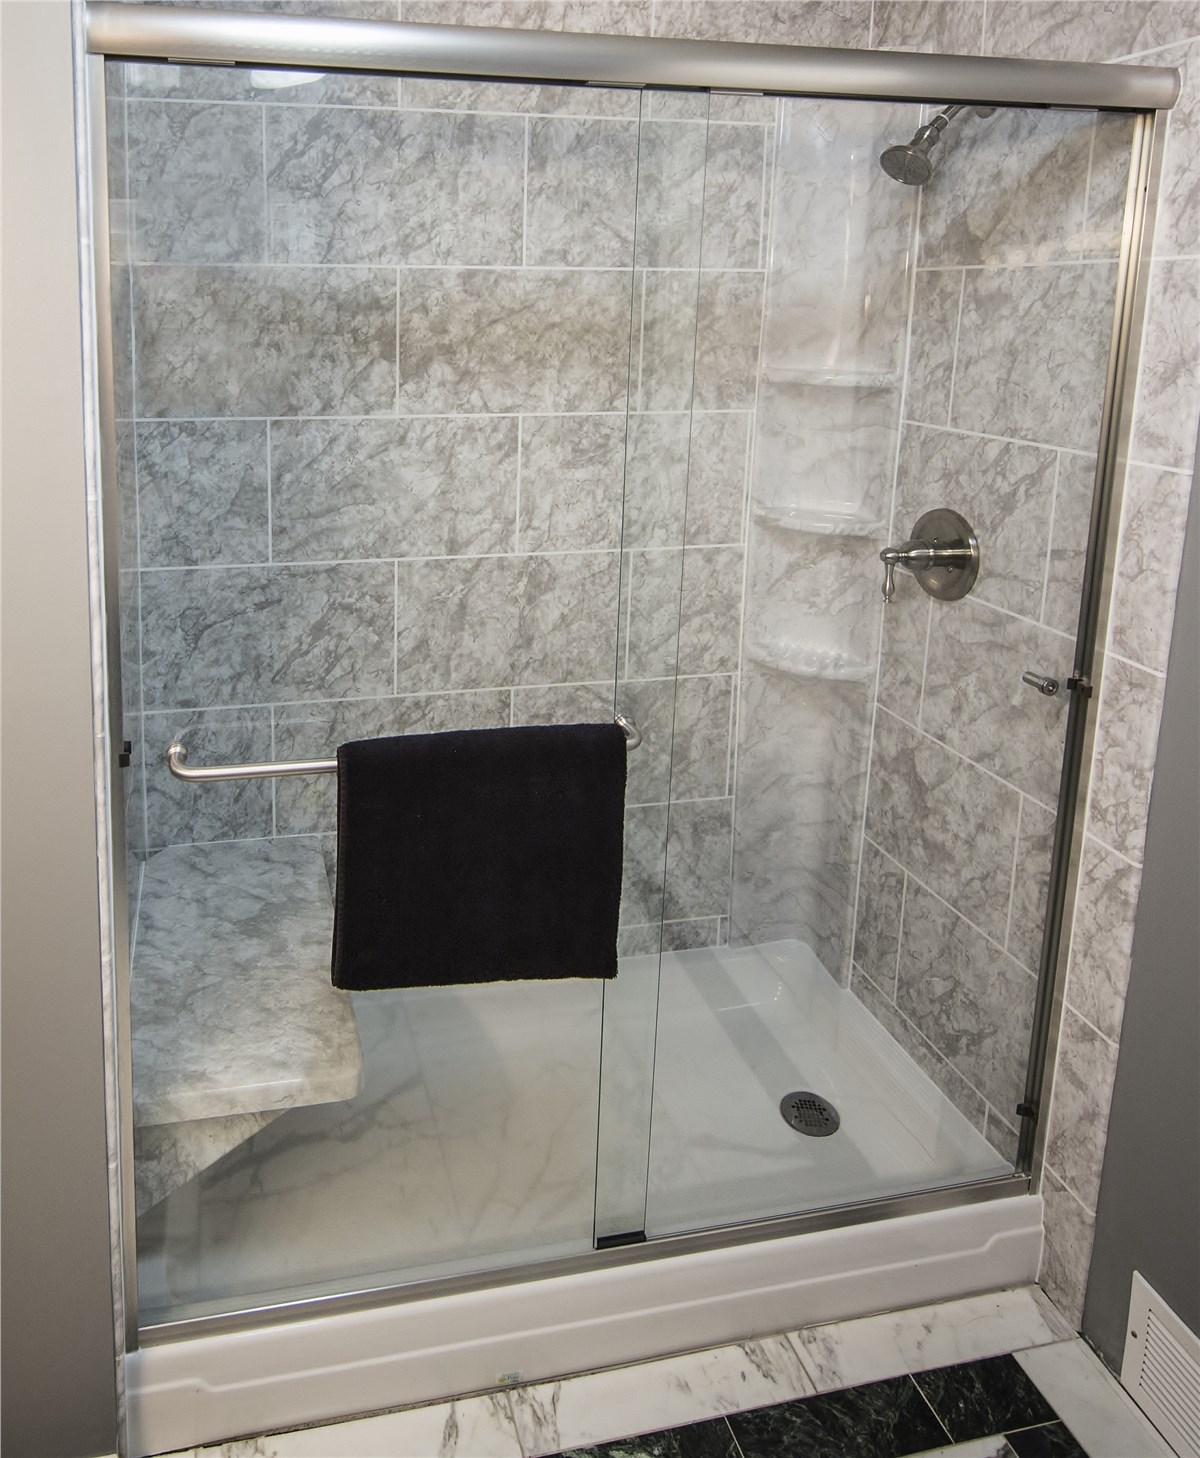 Bathtub to Shower Conversion North Texas Replace Tub